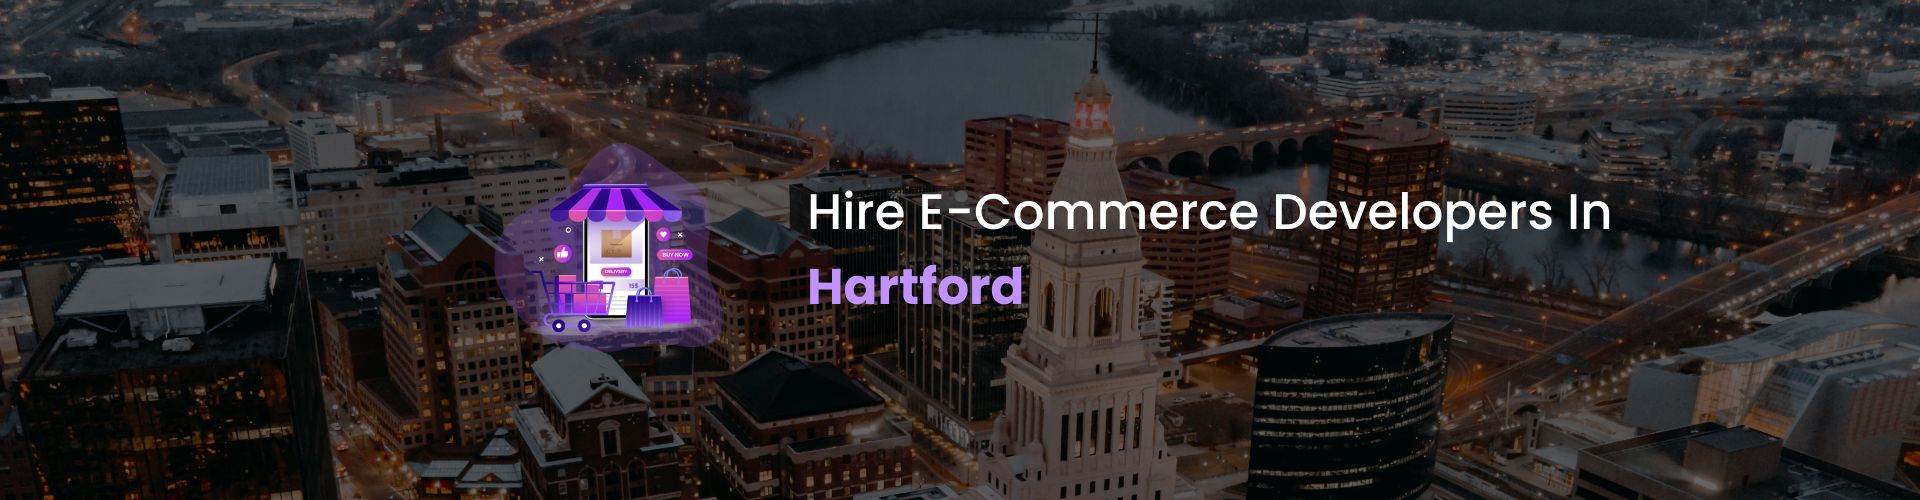 ecommerce developers hartford